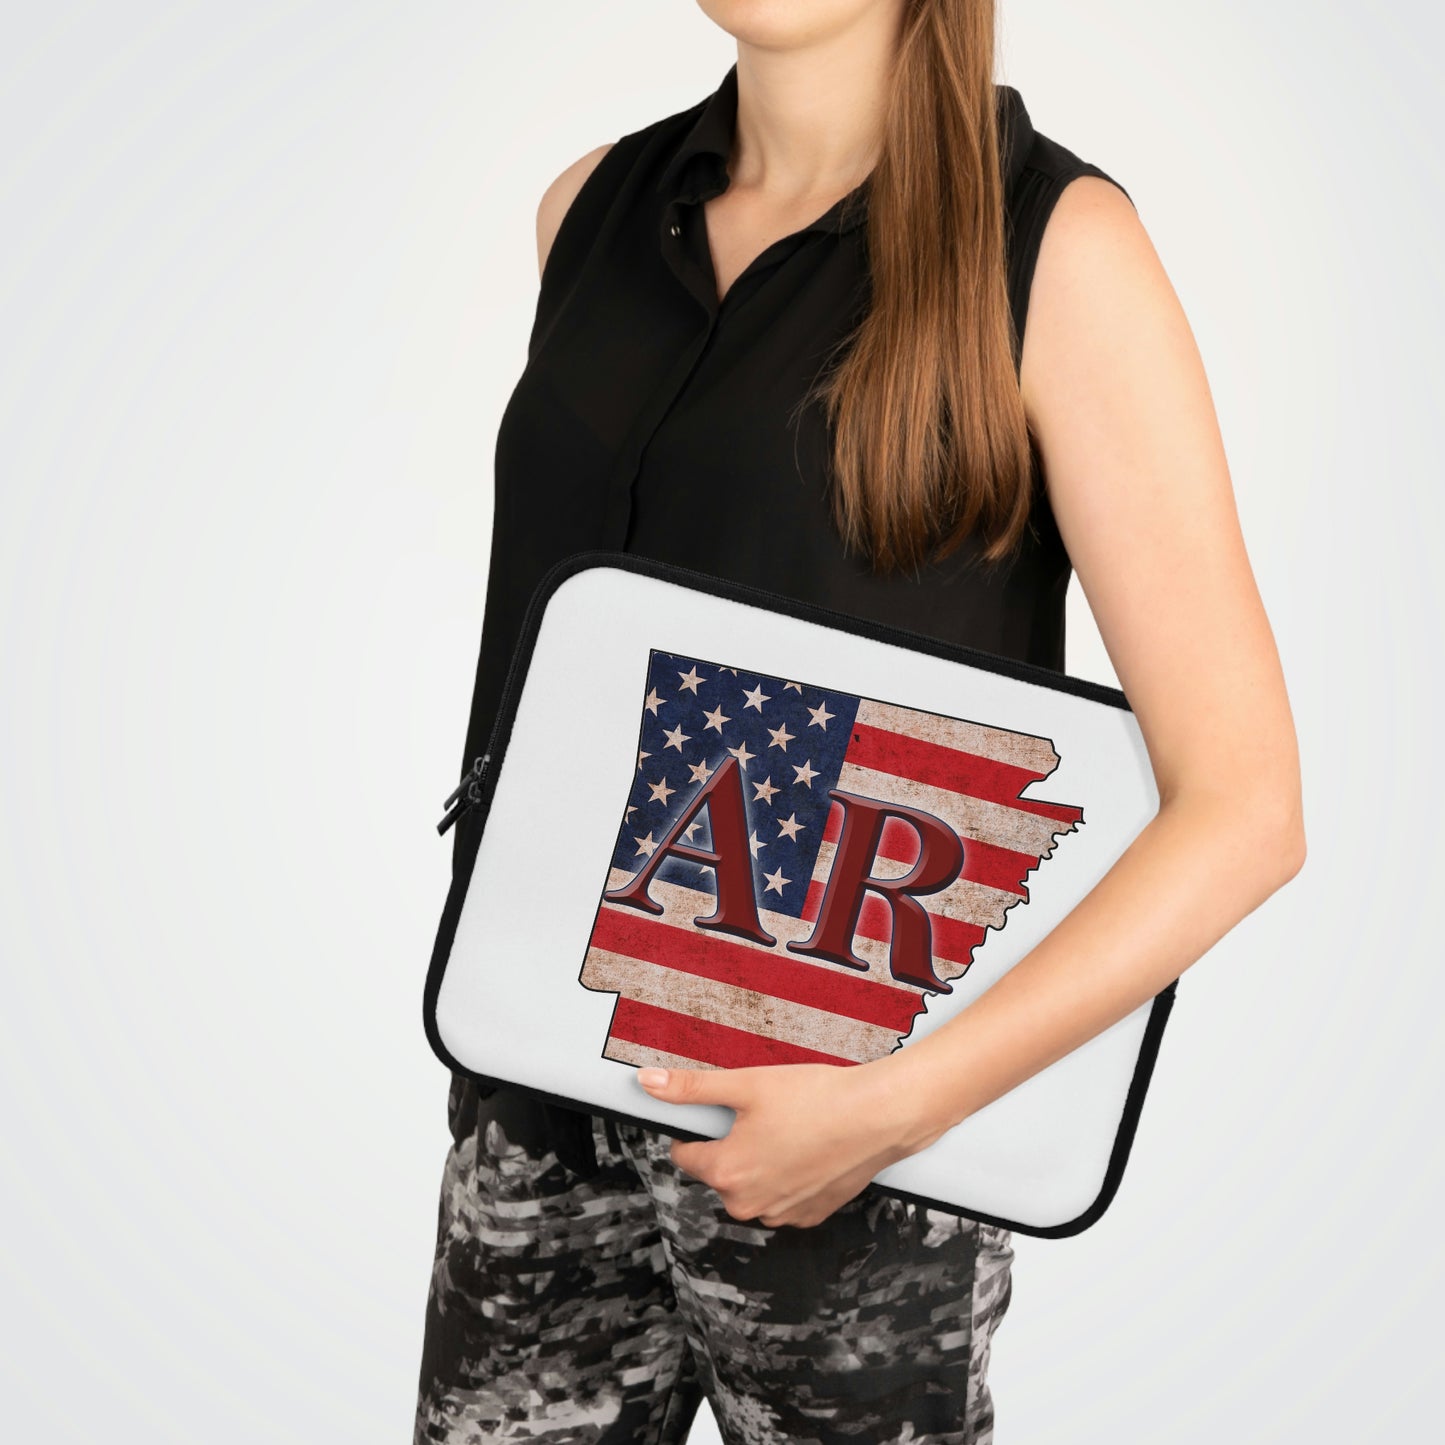 Arkansas US Flag AR Laptop Sleeve